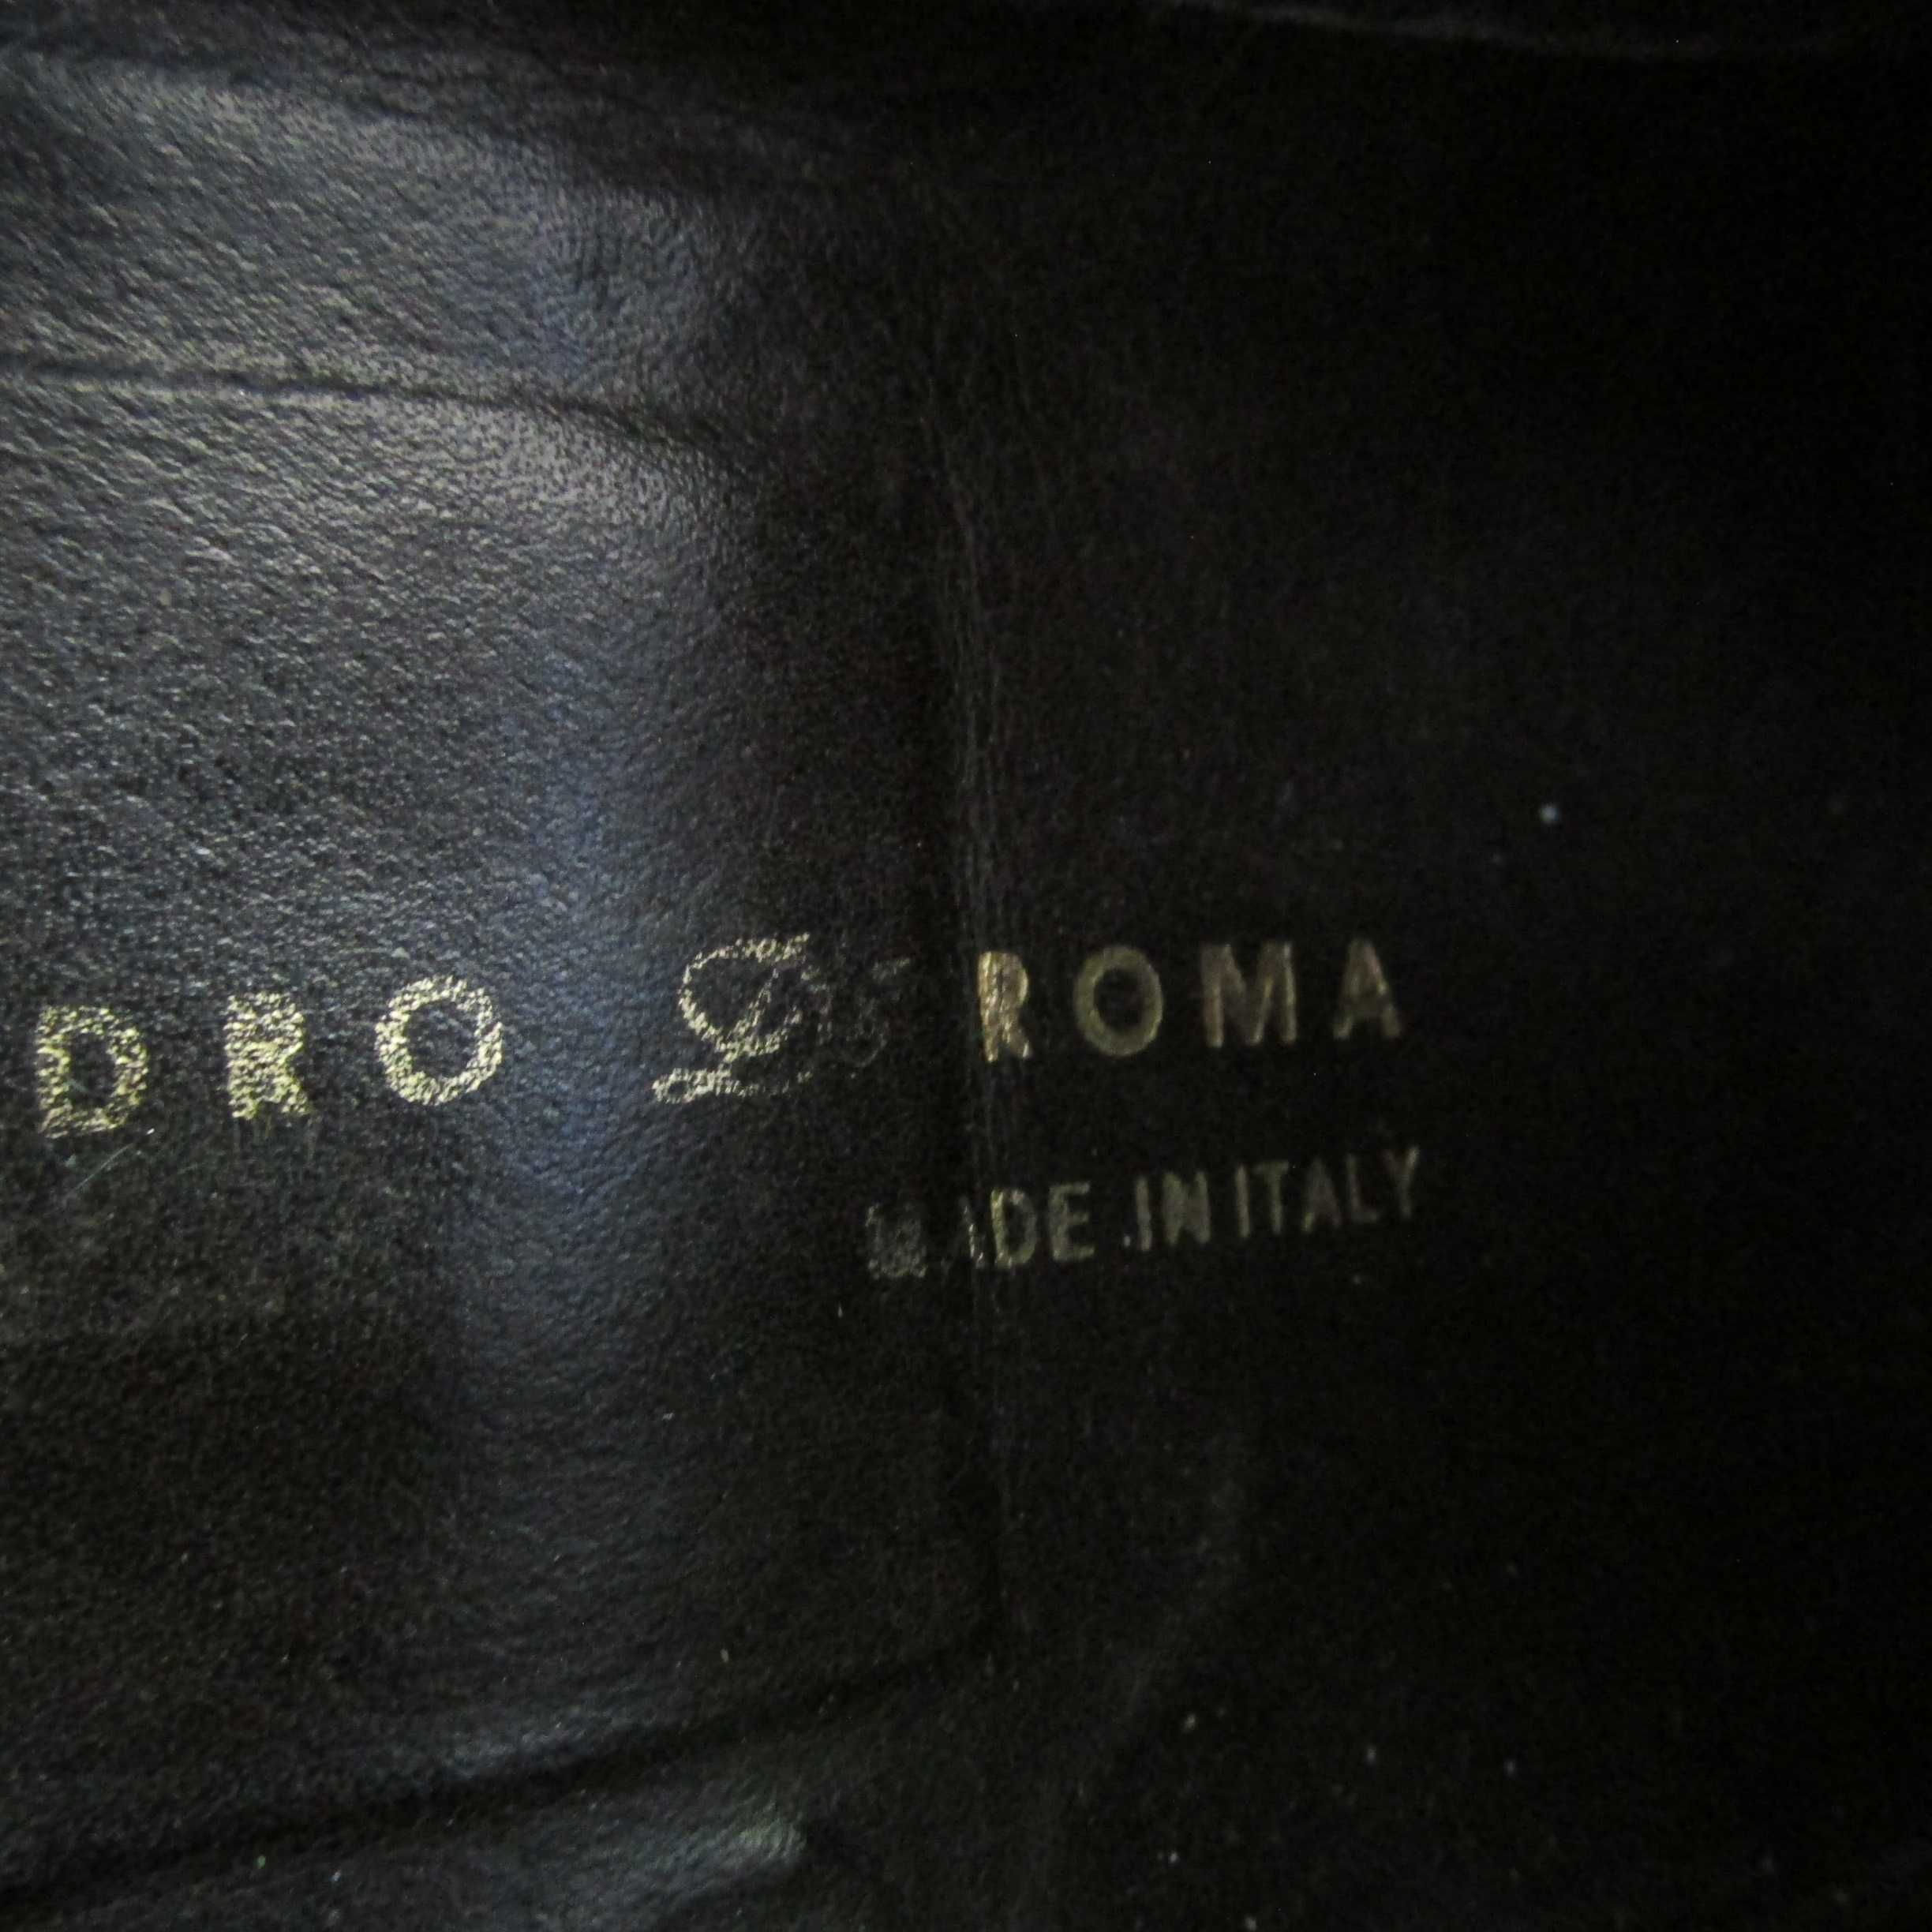 Włoskie buty ze skóry  Prawdziwej-Alessandro Di Roma- Piękne 43 nr